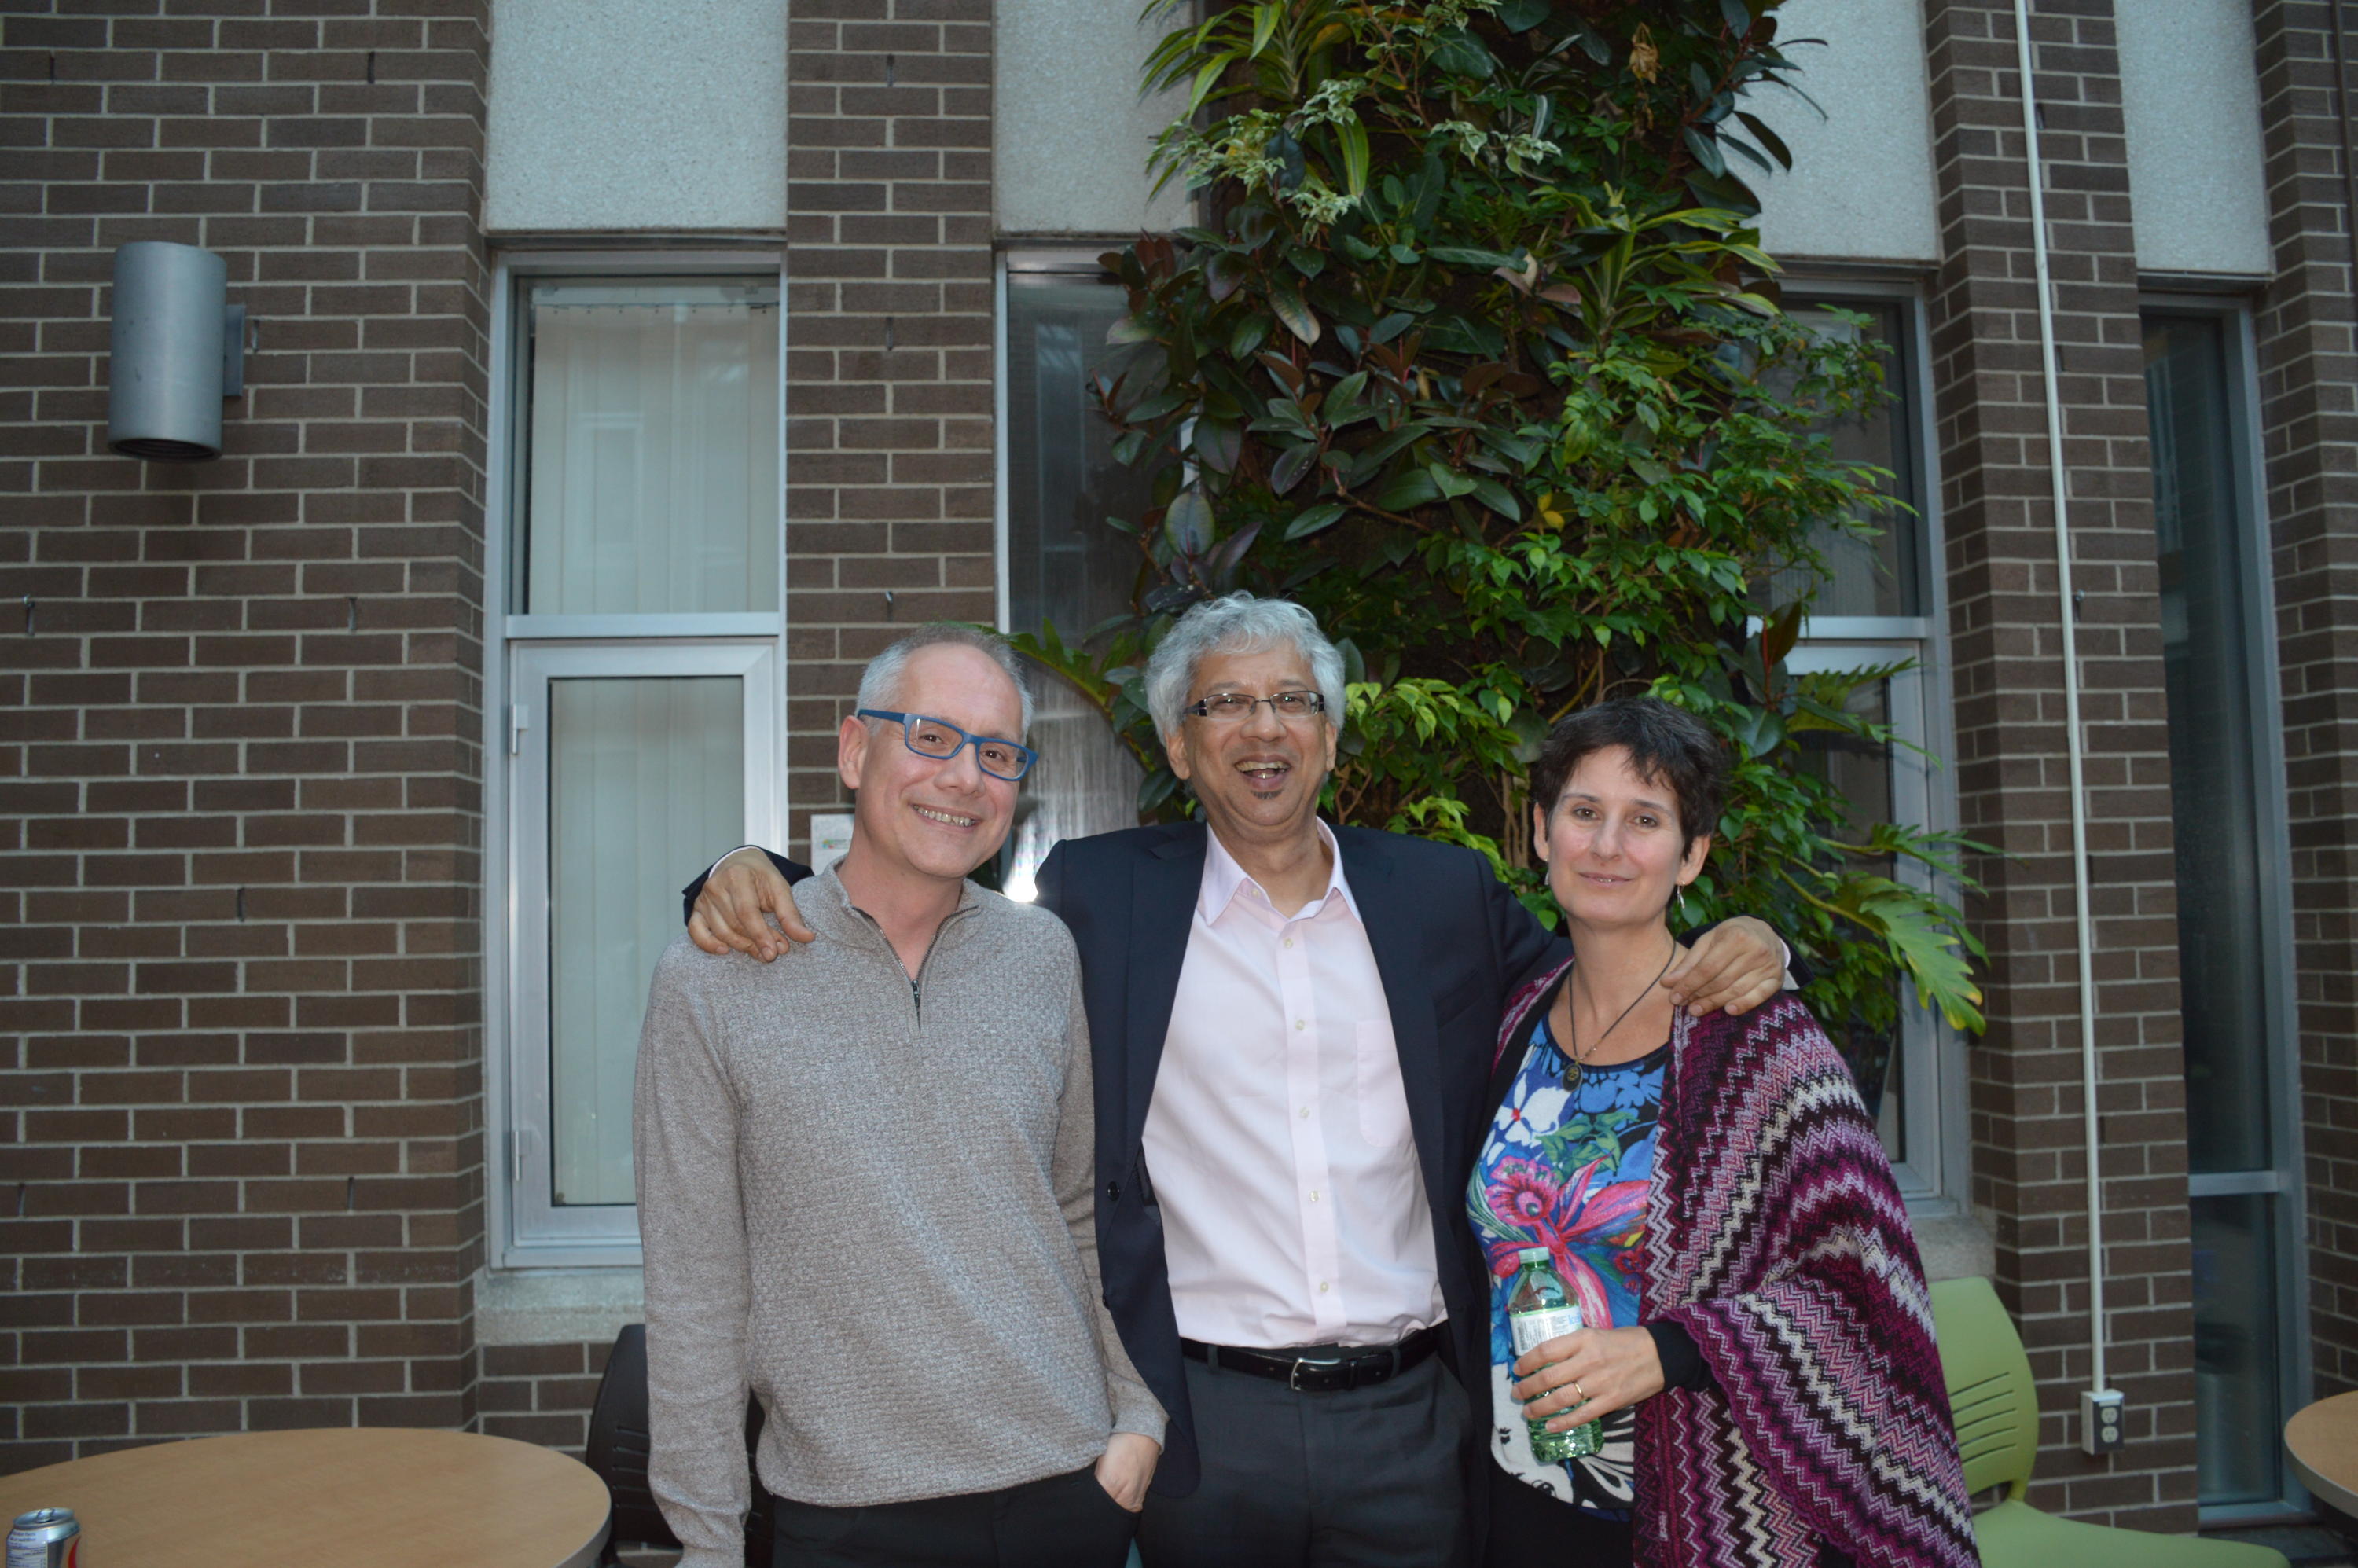 Professor Ray with Professor Gonzalez and Professor Ferrer.